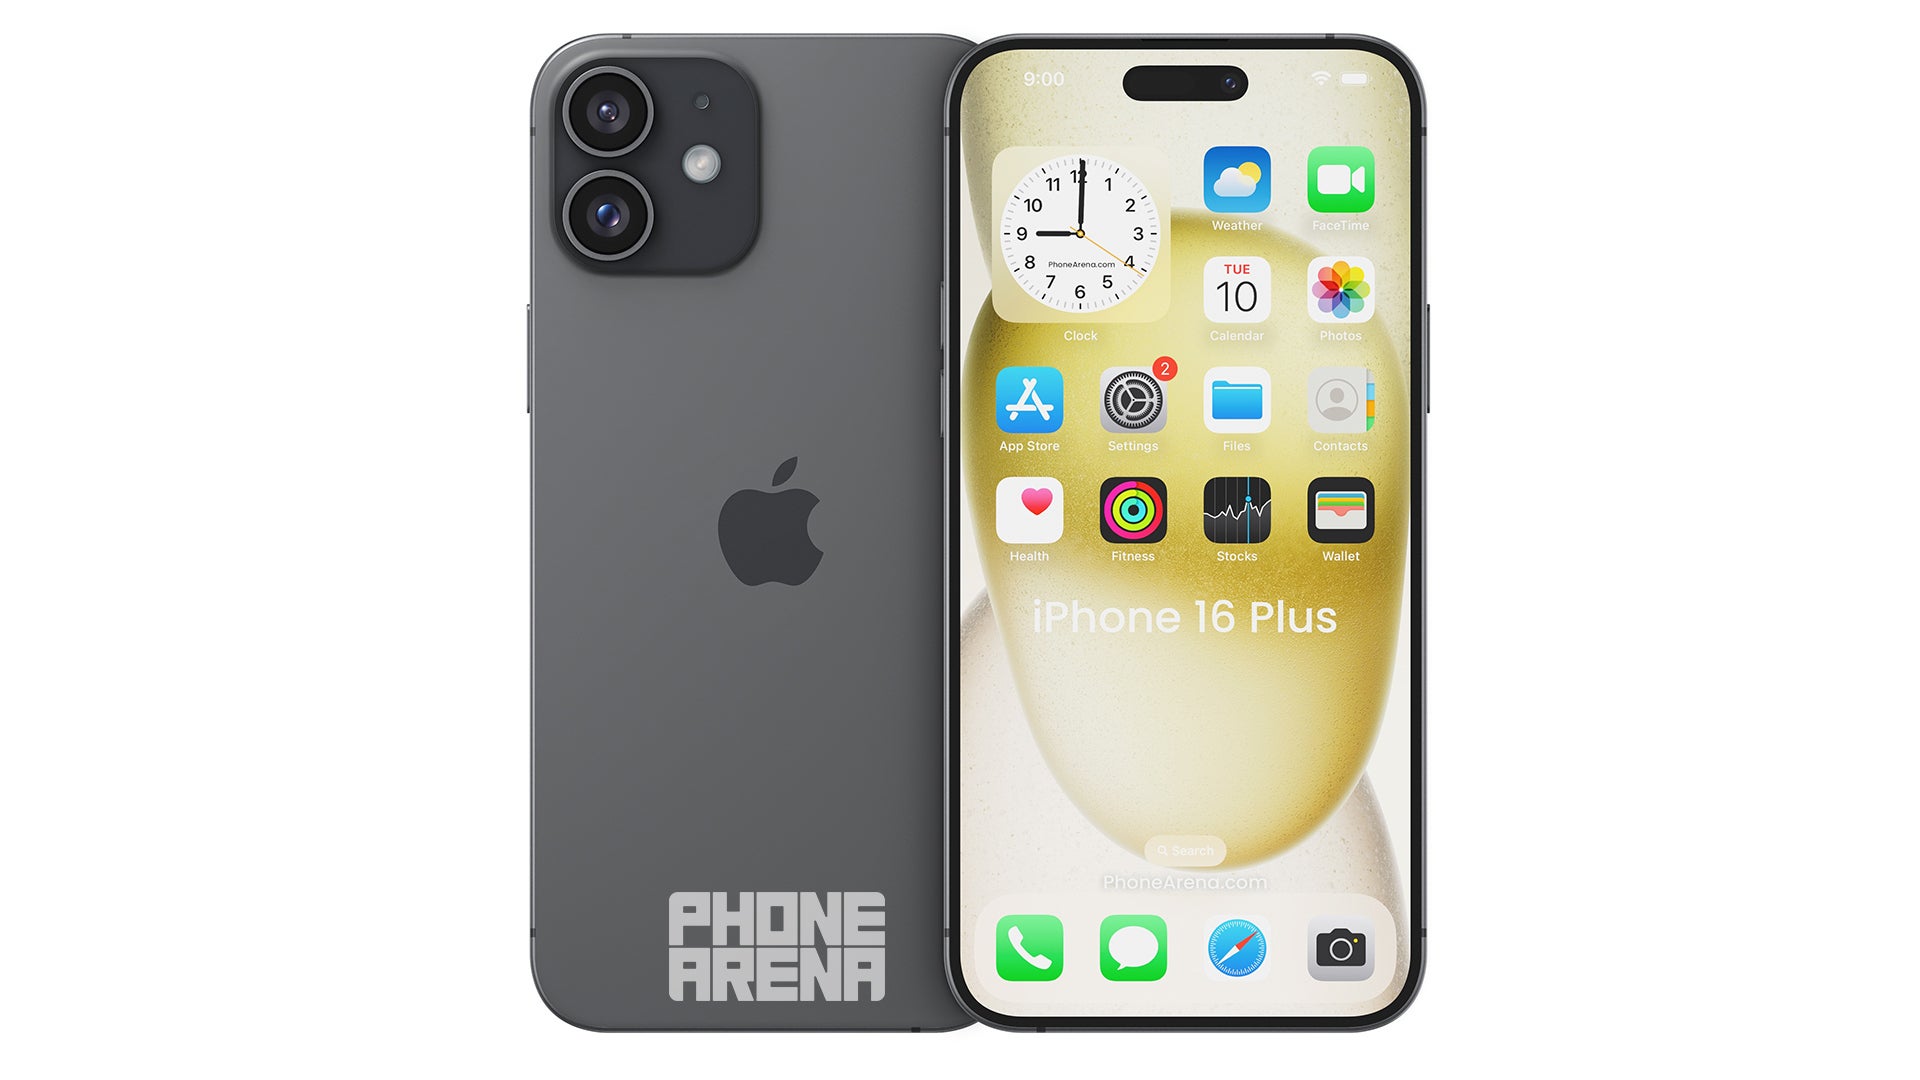 Resim kredisi – PhoneArena - Hadi $$$ hakkında konuşalım: iPhone 16 fiyatı artacak mı, azalacak mı… yoksa yatay mı seyredecek?